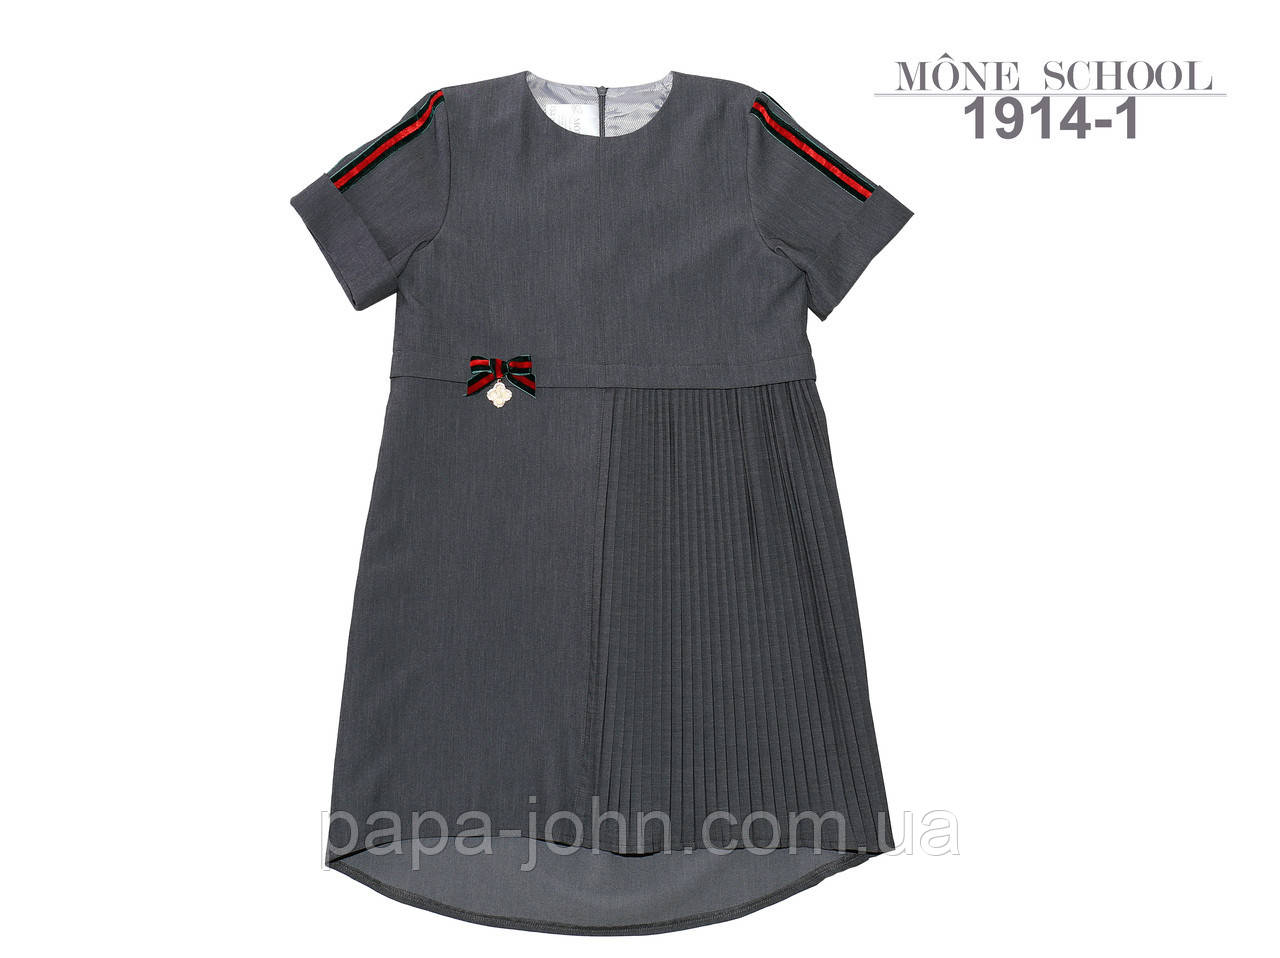 Сукня текстиль ТМ Моне колір сірий р. 122 134 146 152